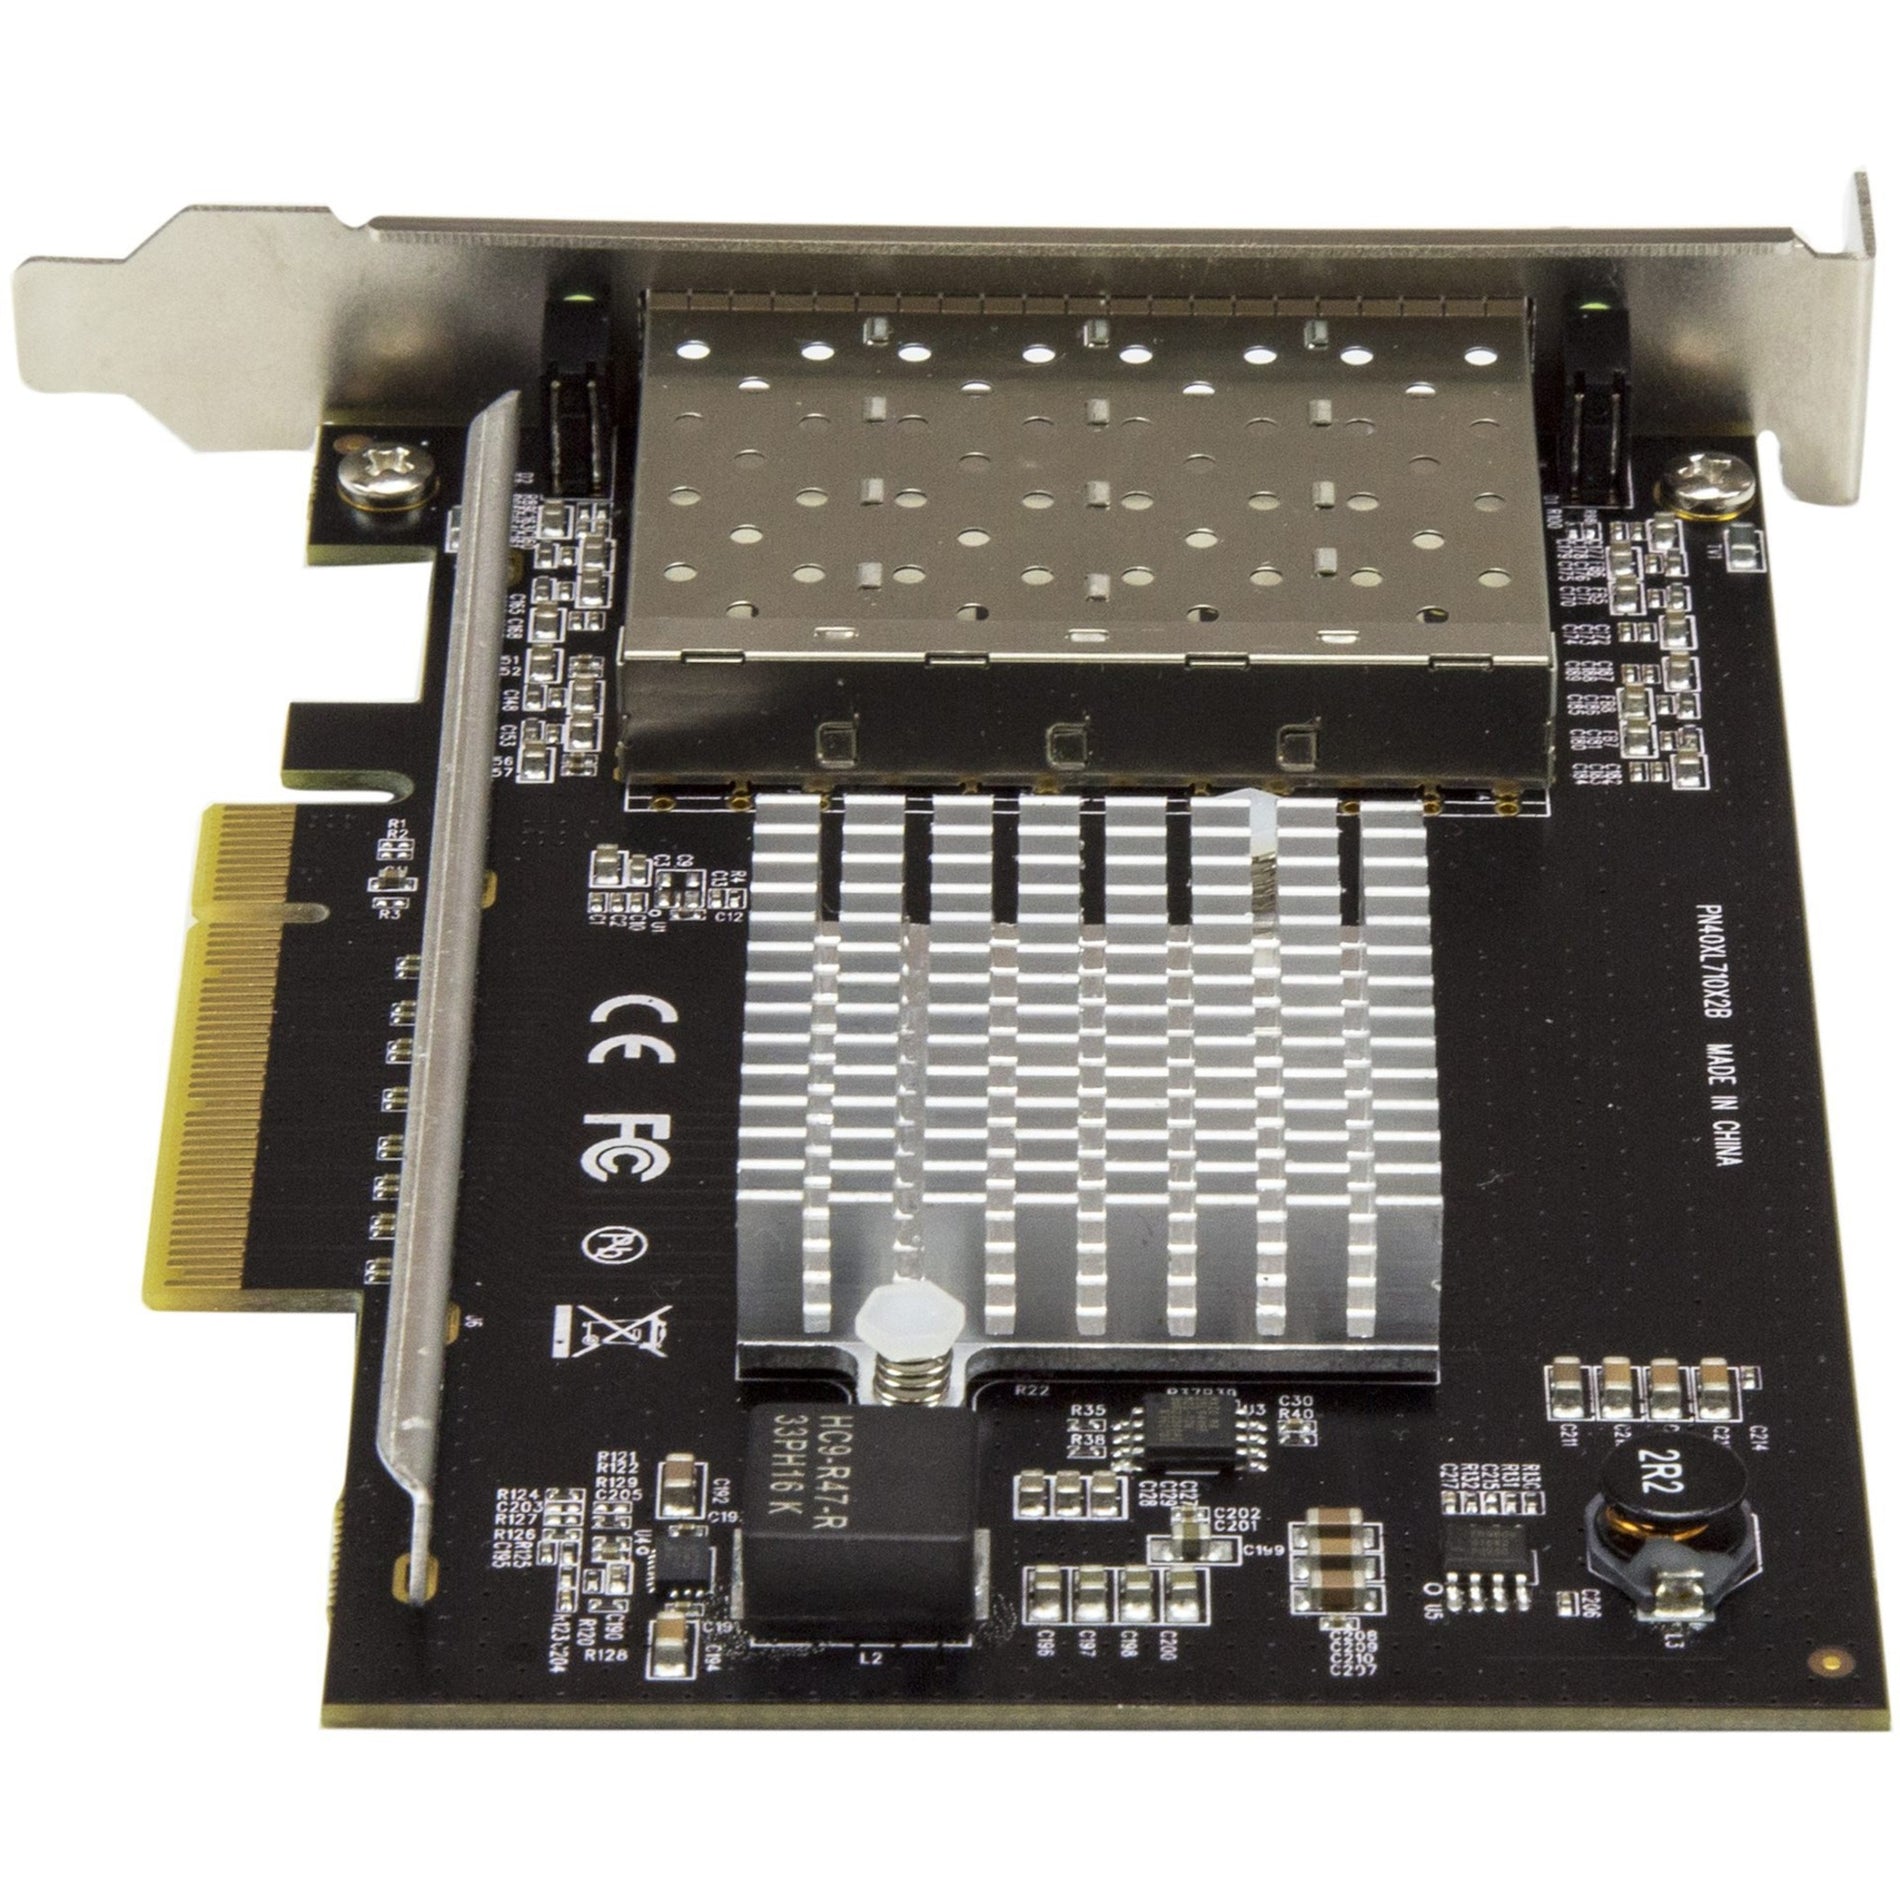 StarTech.com PEX10GSFP4I Quad-Port SFP+ Server Network Card - Intel XL710 Chip, 10Gigabit Ethernet Card